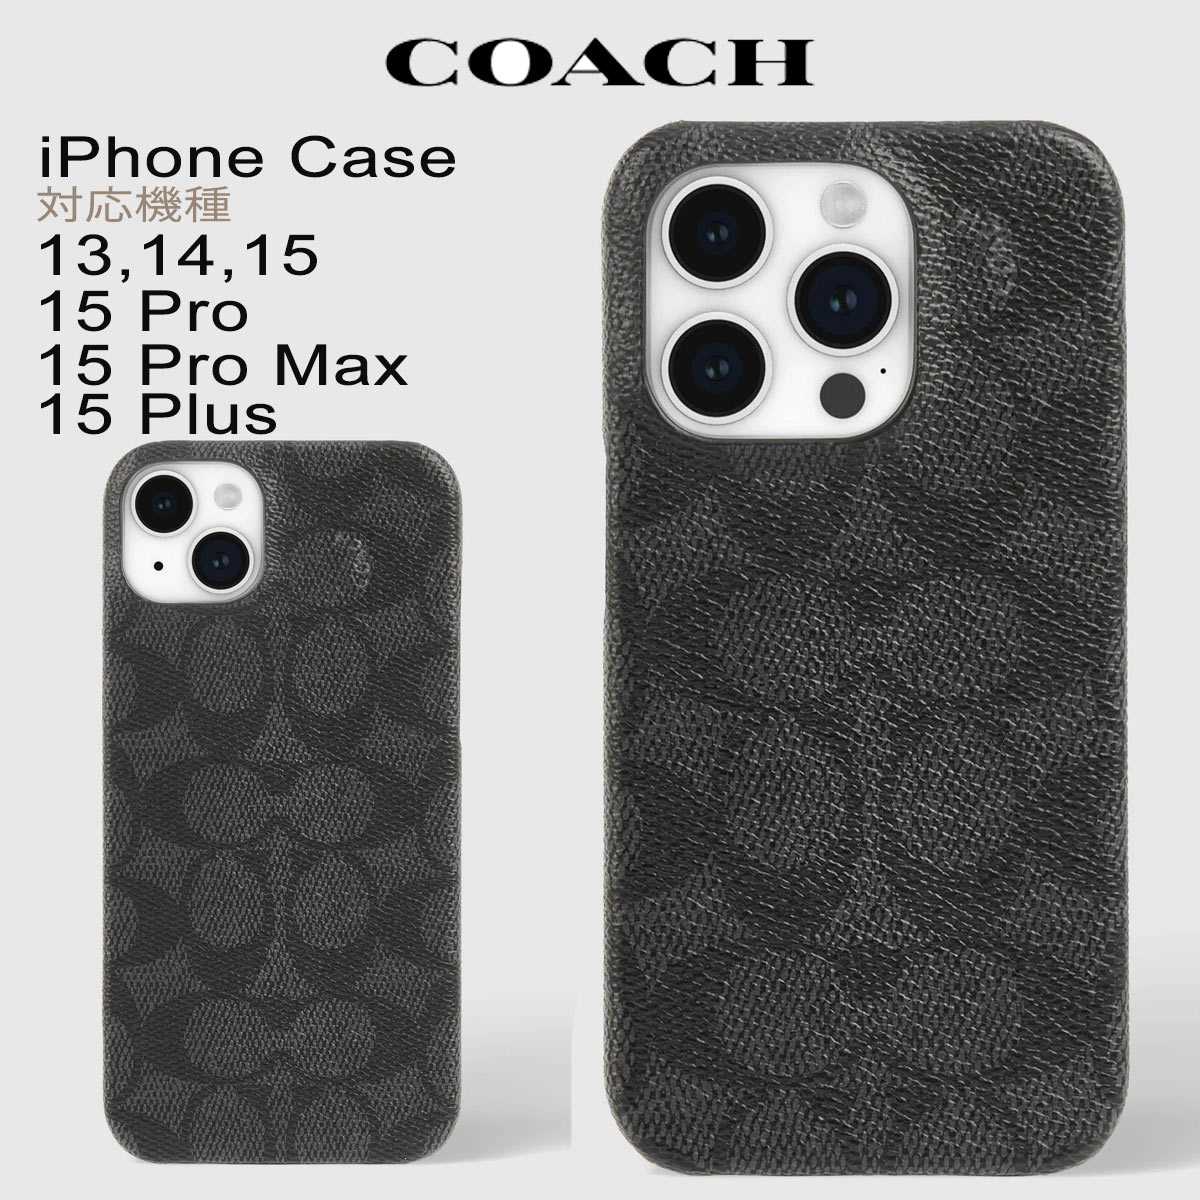 コーチ スマホケース コーチ iphone13/14/15 Pro ProMAX Plus Plus スマホケース ブランド おしゃれ Coach